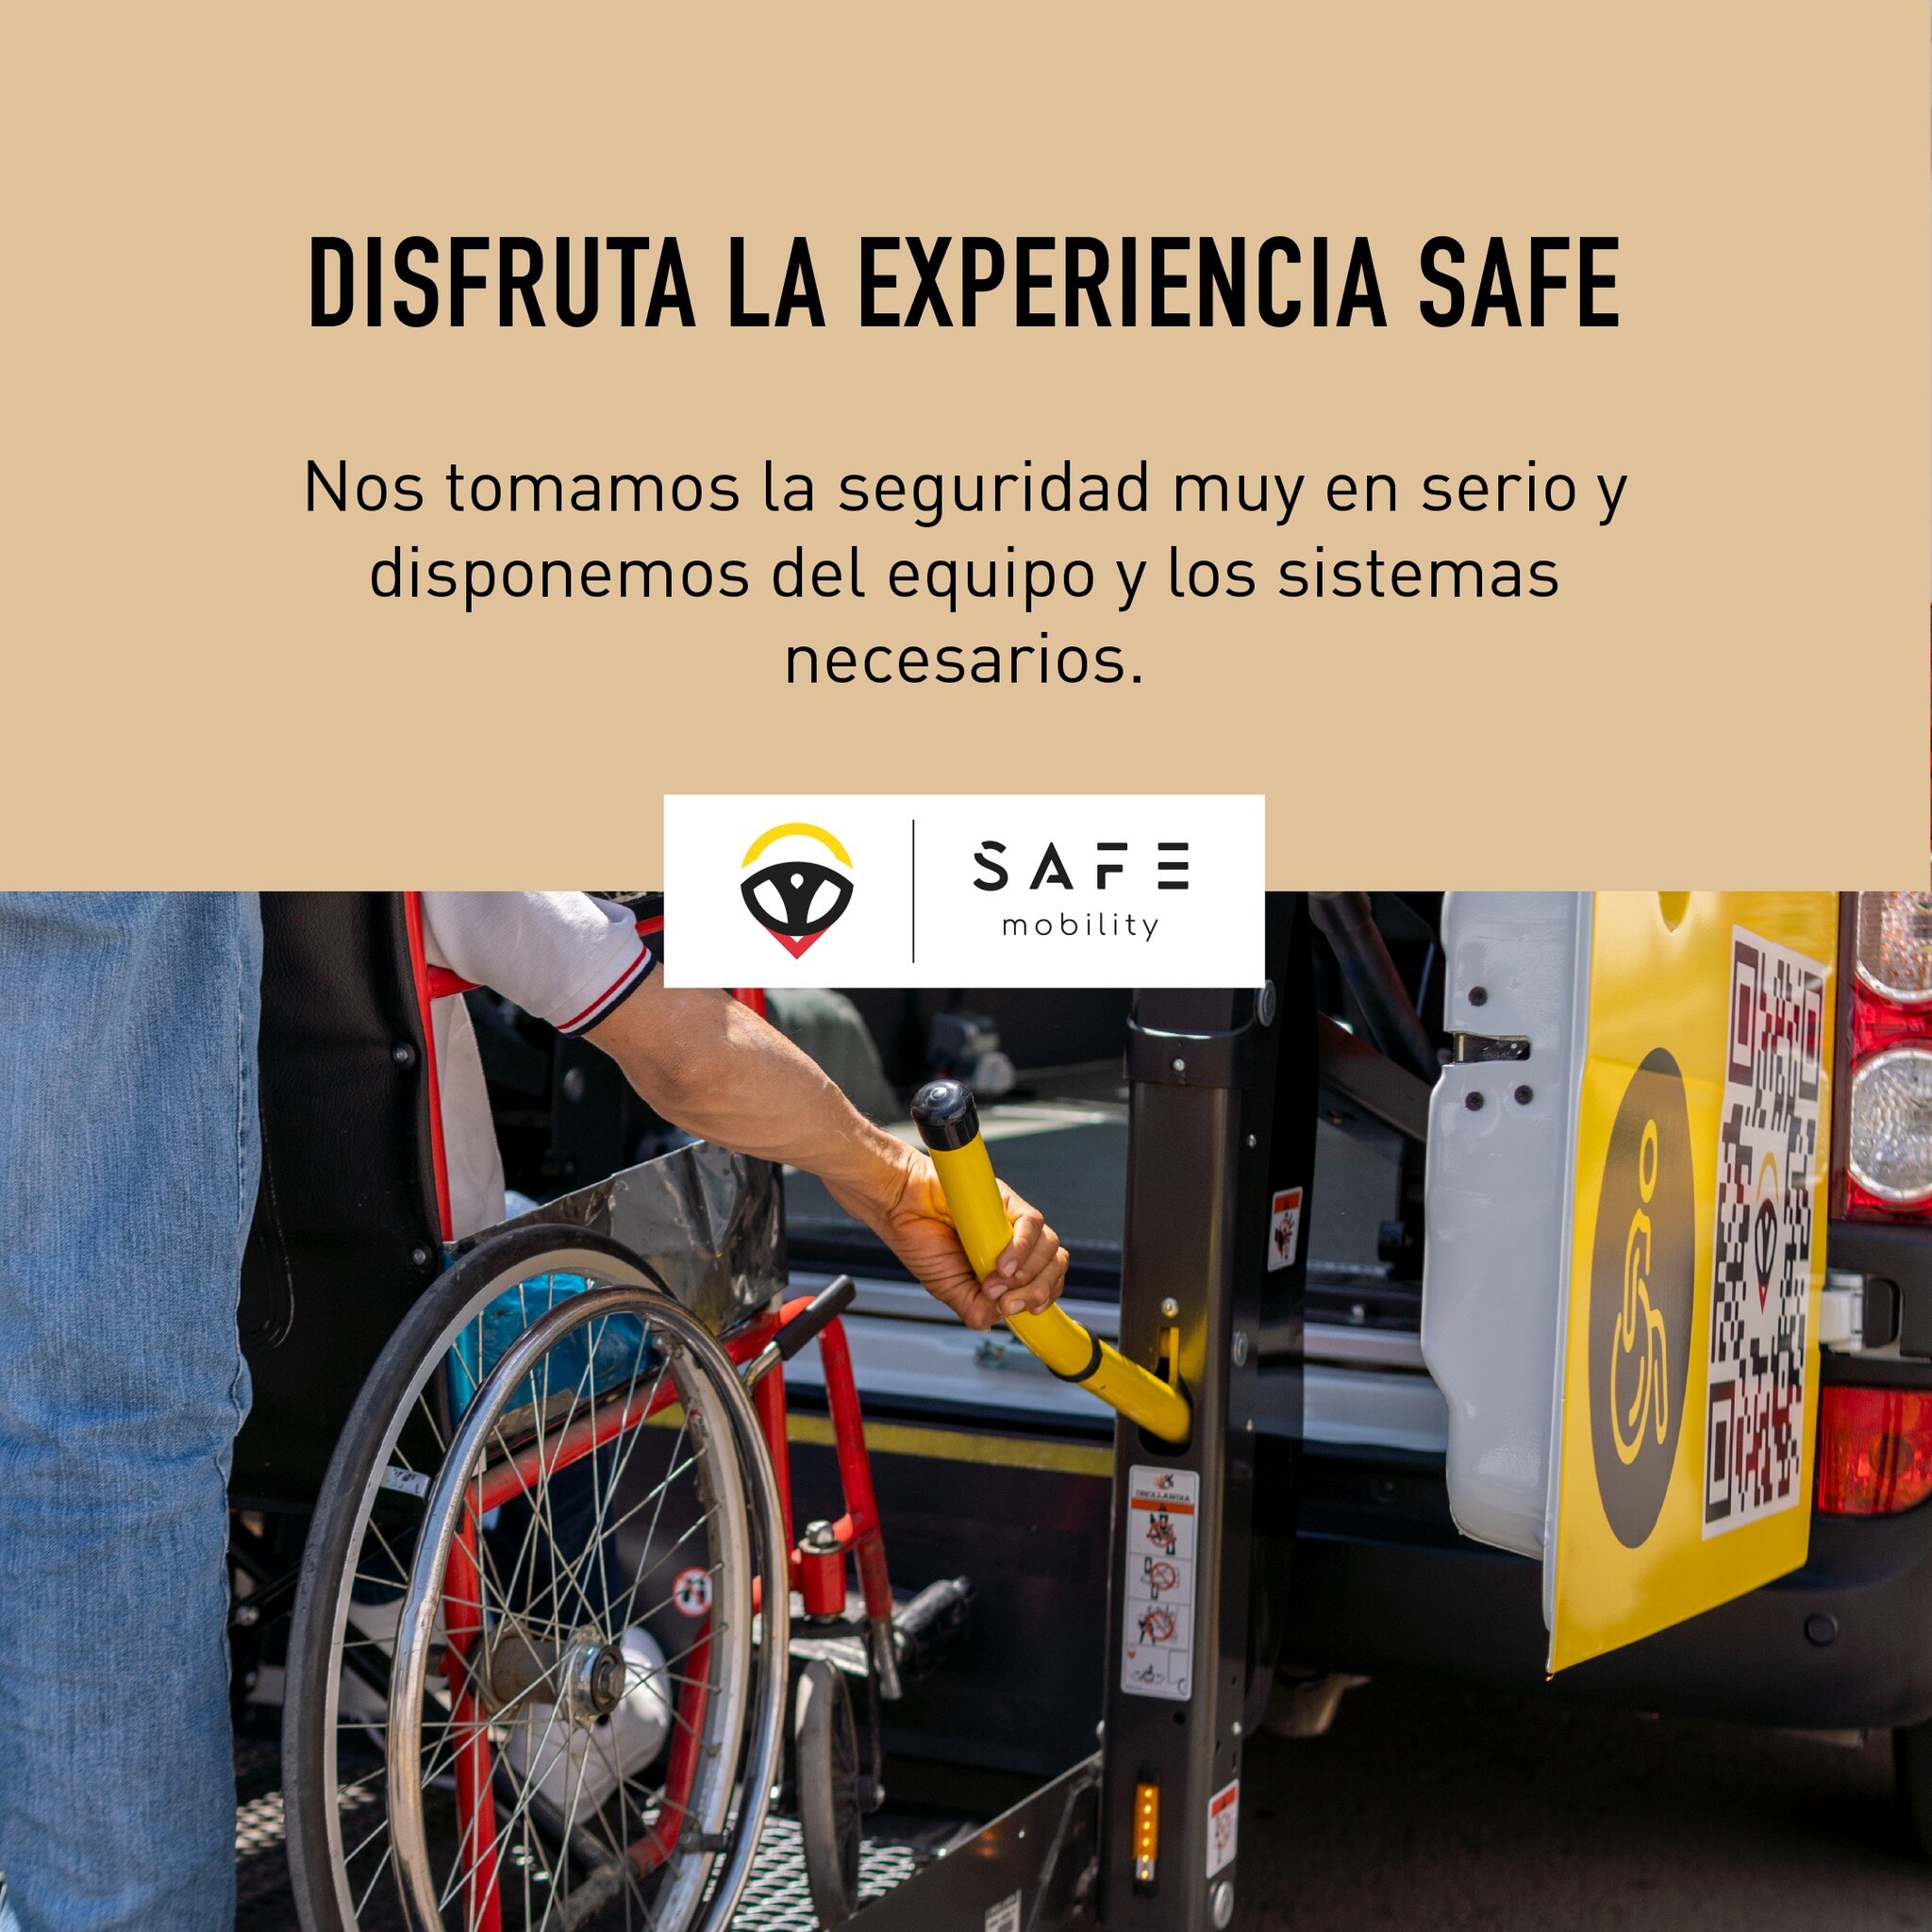 Ganchos de seguridad 🚗

#seguridad #viajeseguro #camioneta #safeapp #transporte #puebla #silladeruedas